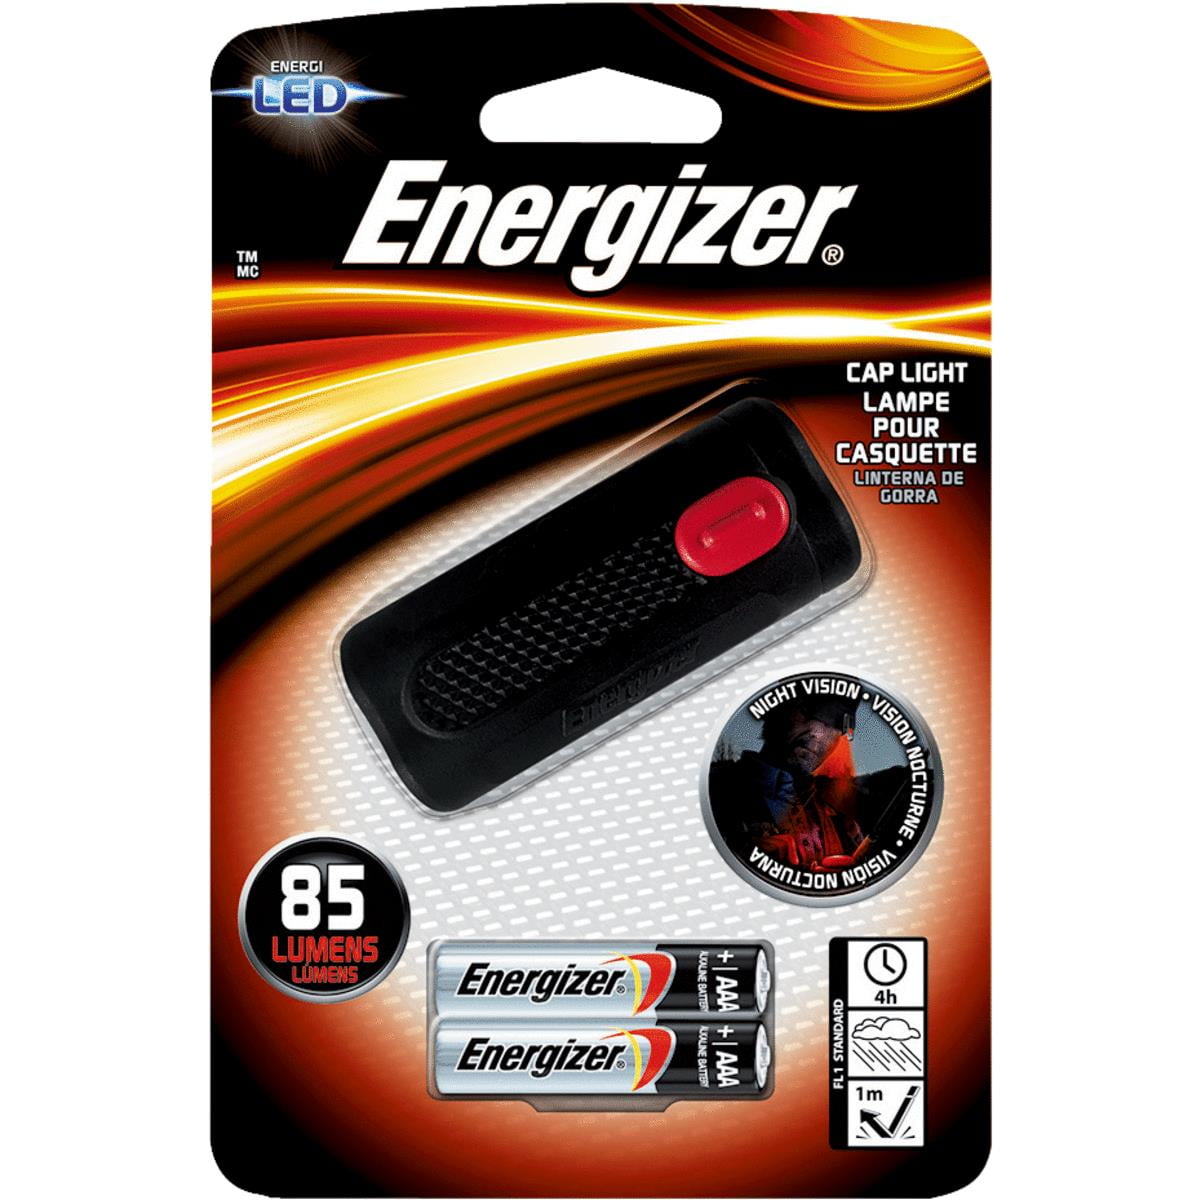 Energizer 245 Hour Folding LED Lantern 